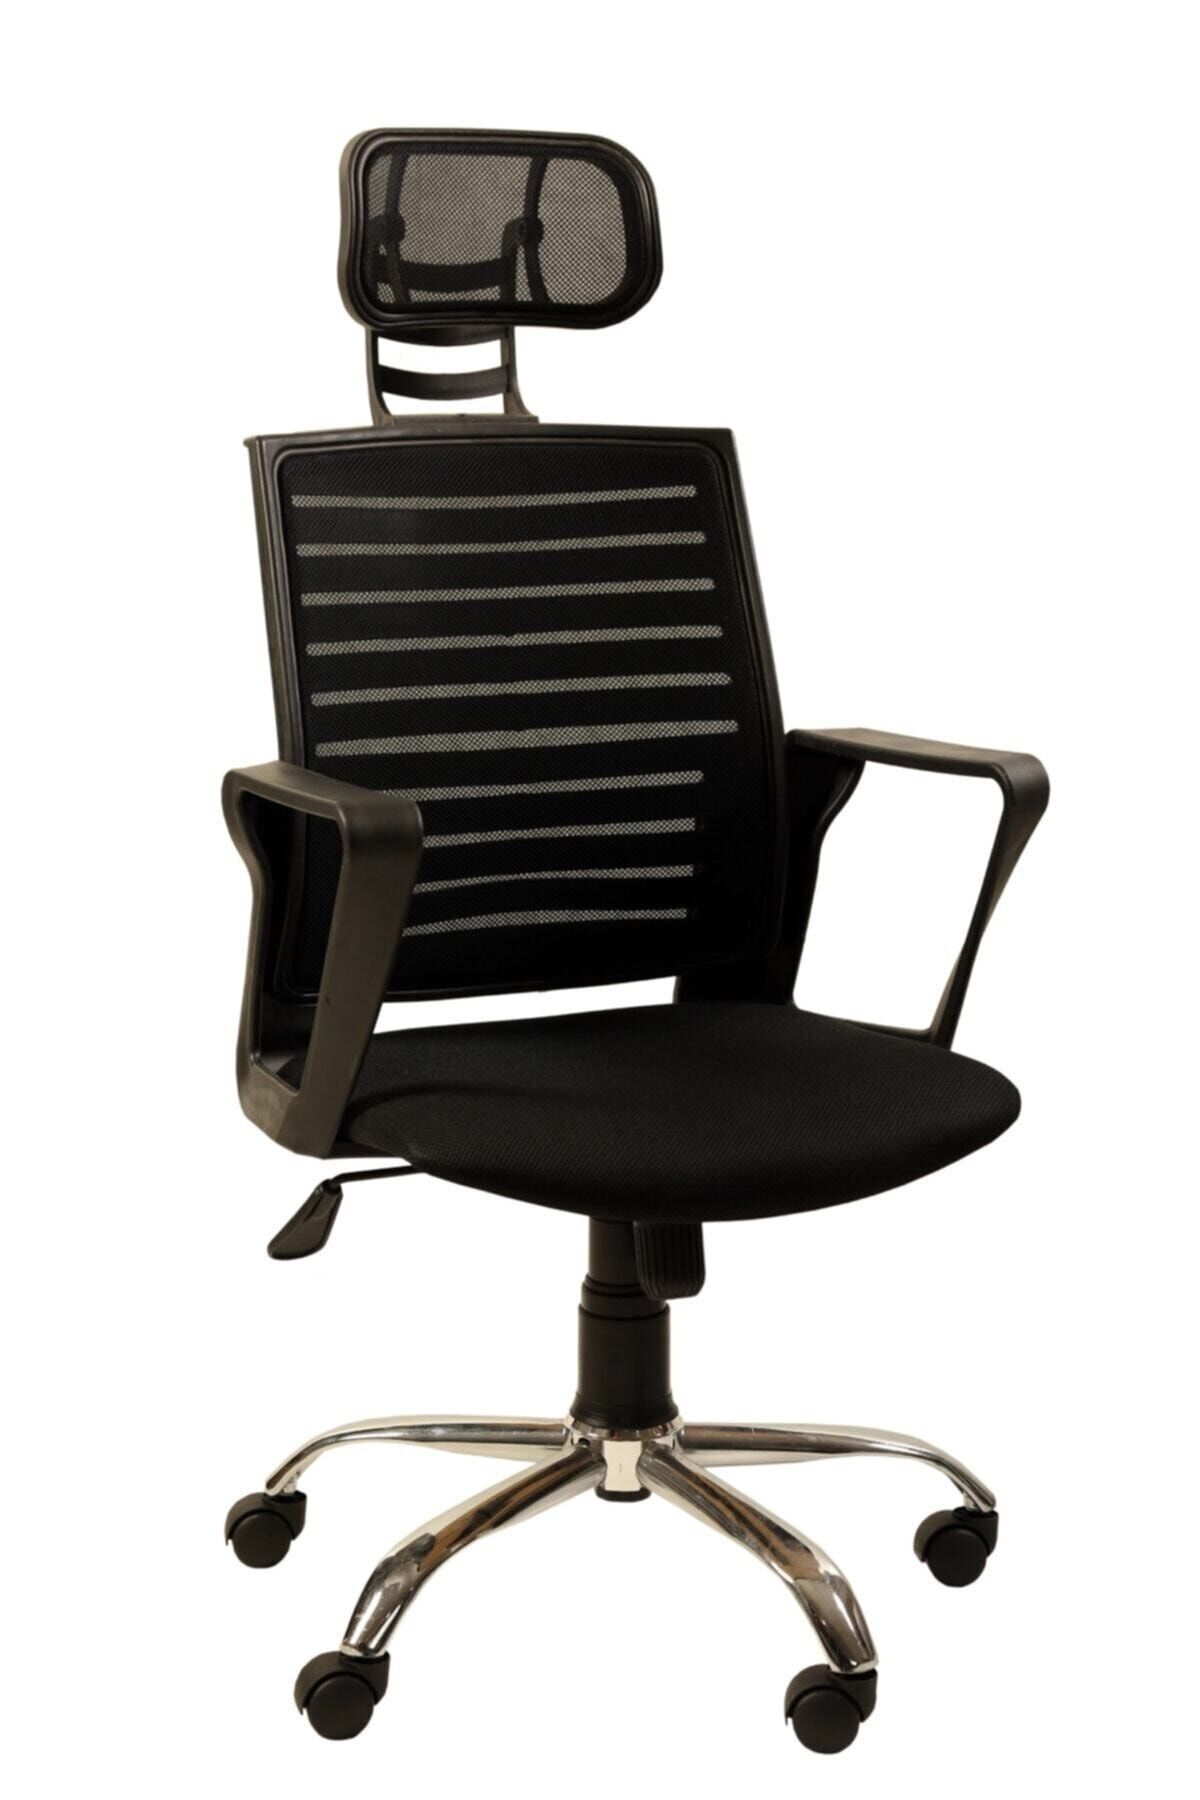 AYANAVM 2 ADET Ofis Makam Sandalyesi Siyah Fileli Bilgisayar Ofis Çalışma Sandalyesi Koltuğu Makam Koltuğu